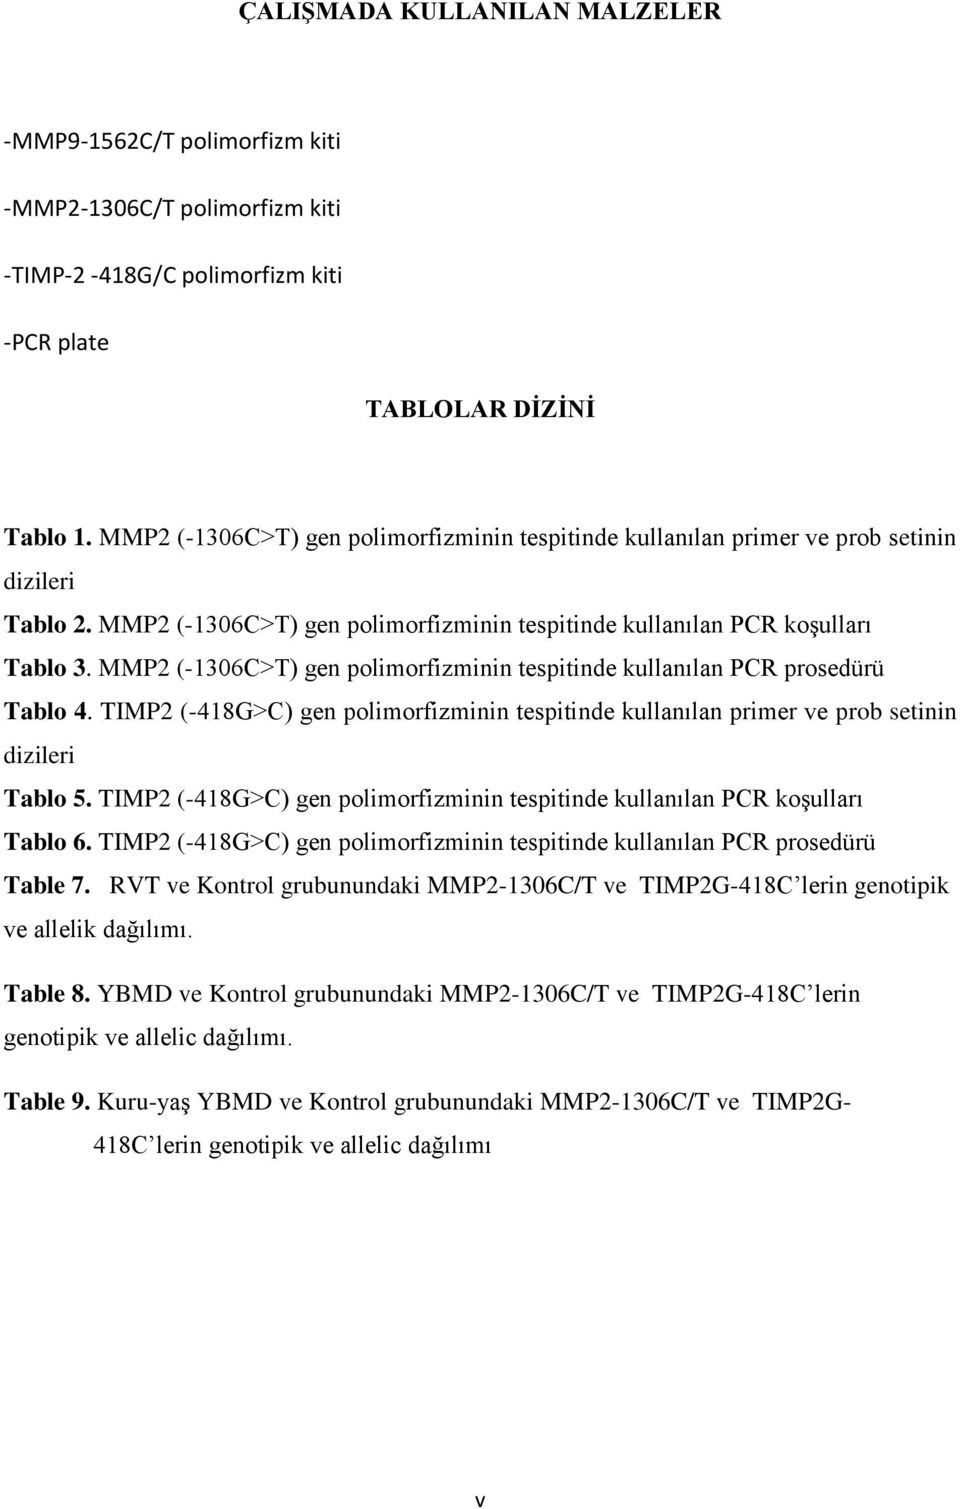 MMP2 (-1306C>T) gen polimorfizminin tespitinde kullanılan PCR prosedürü Tablo 4. TIMP2 (-418G>C) gen polimorfizminin tespitinde kullanılan primer ve prob setinin dizileri Tablo 5.